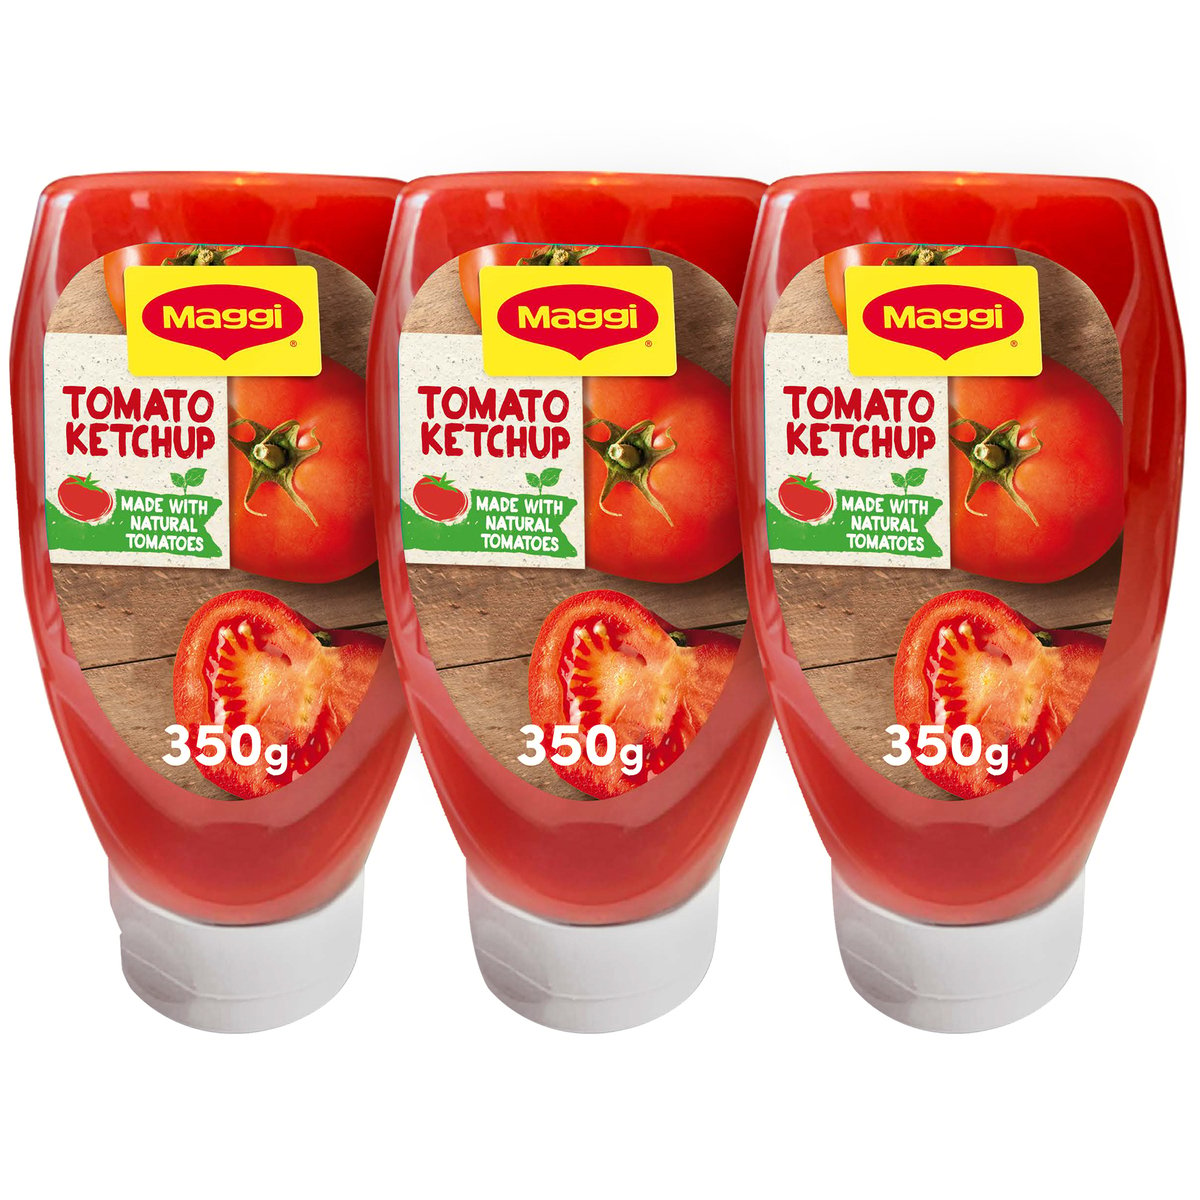 ماجي كاتشب الطماطم في عبوة مضغوطة 3 × 350 جم